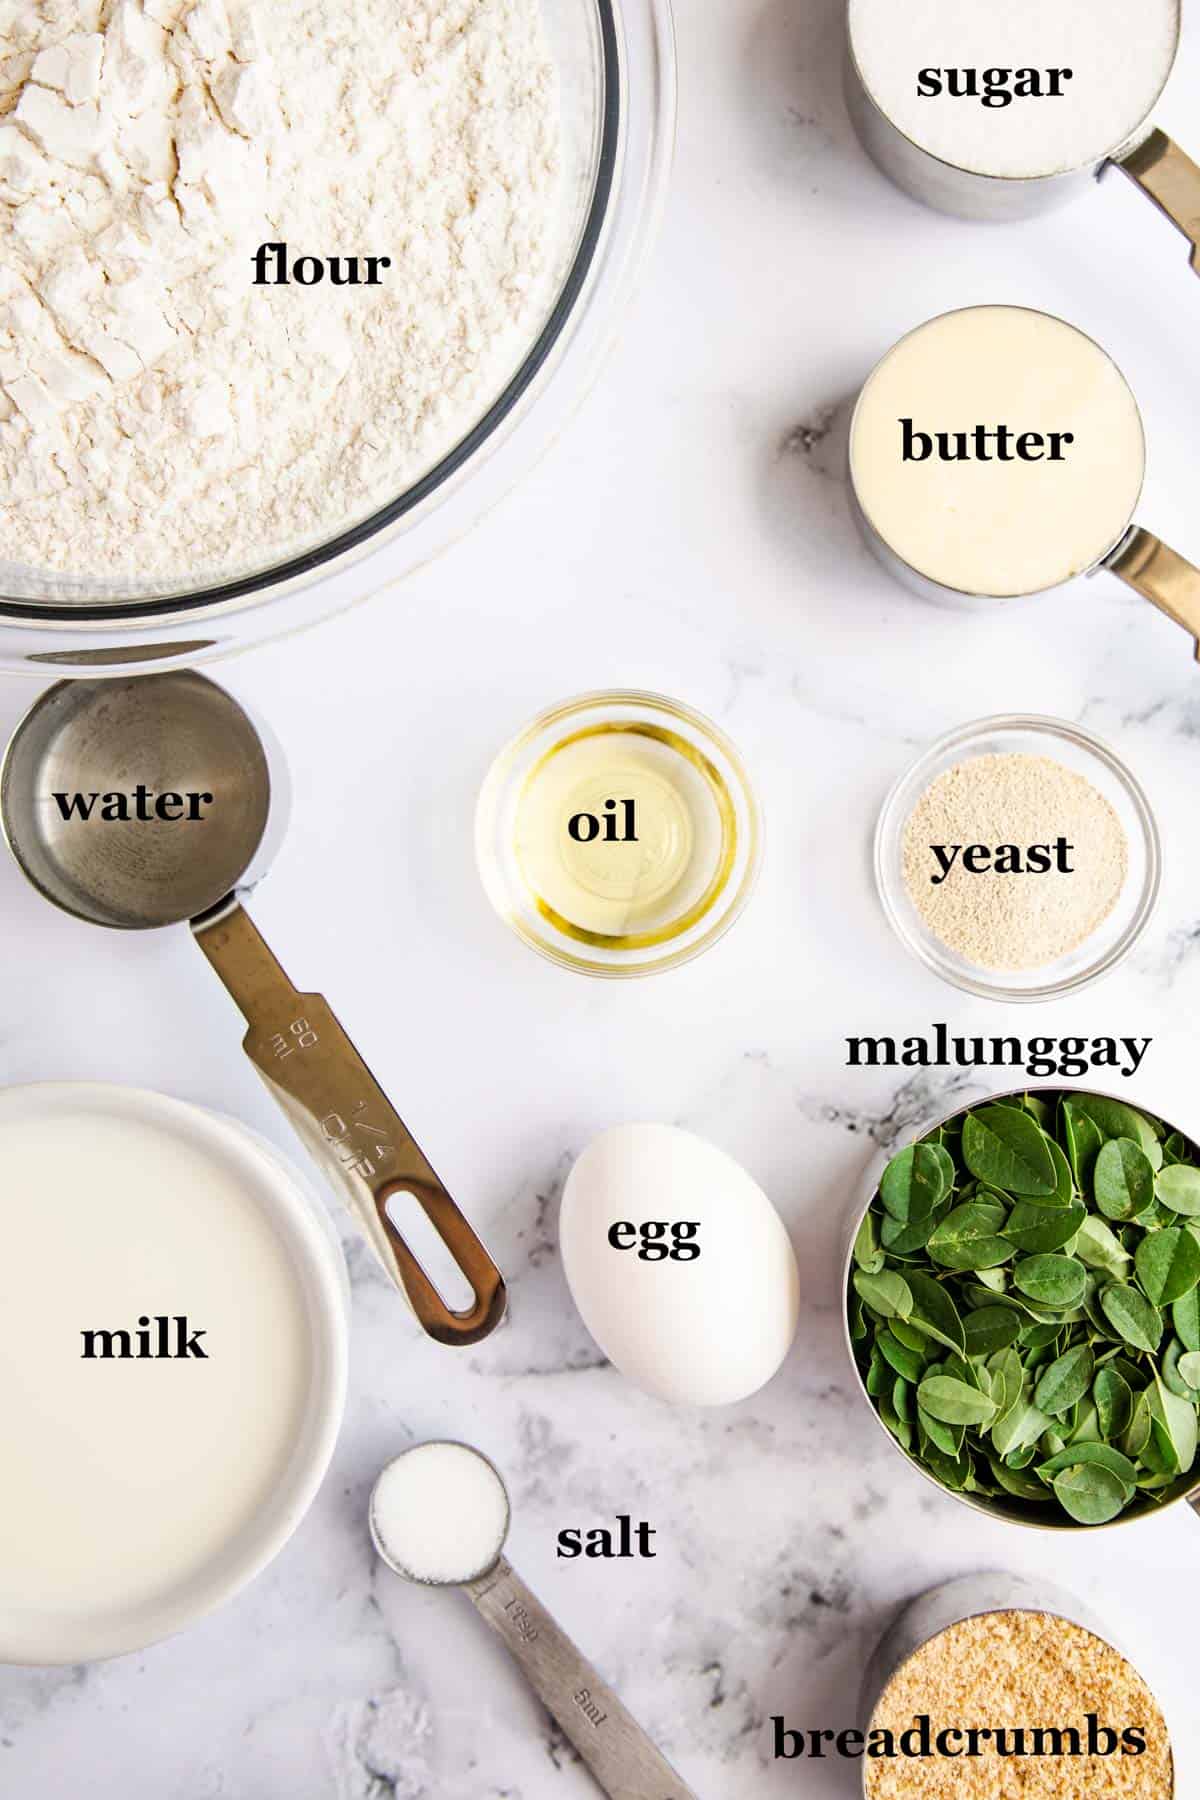 ingredients for making moringa bread.